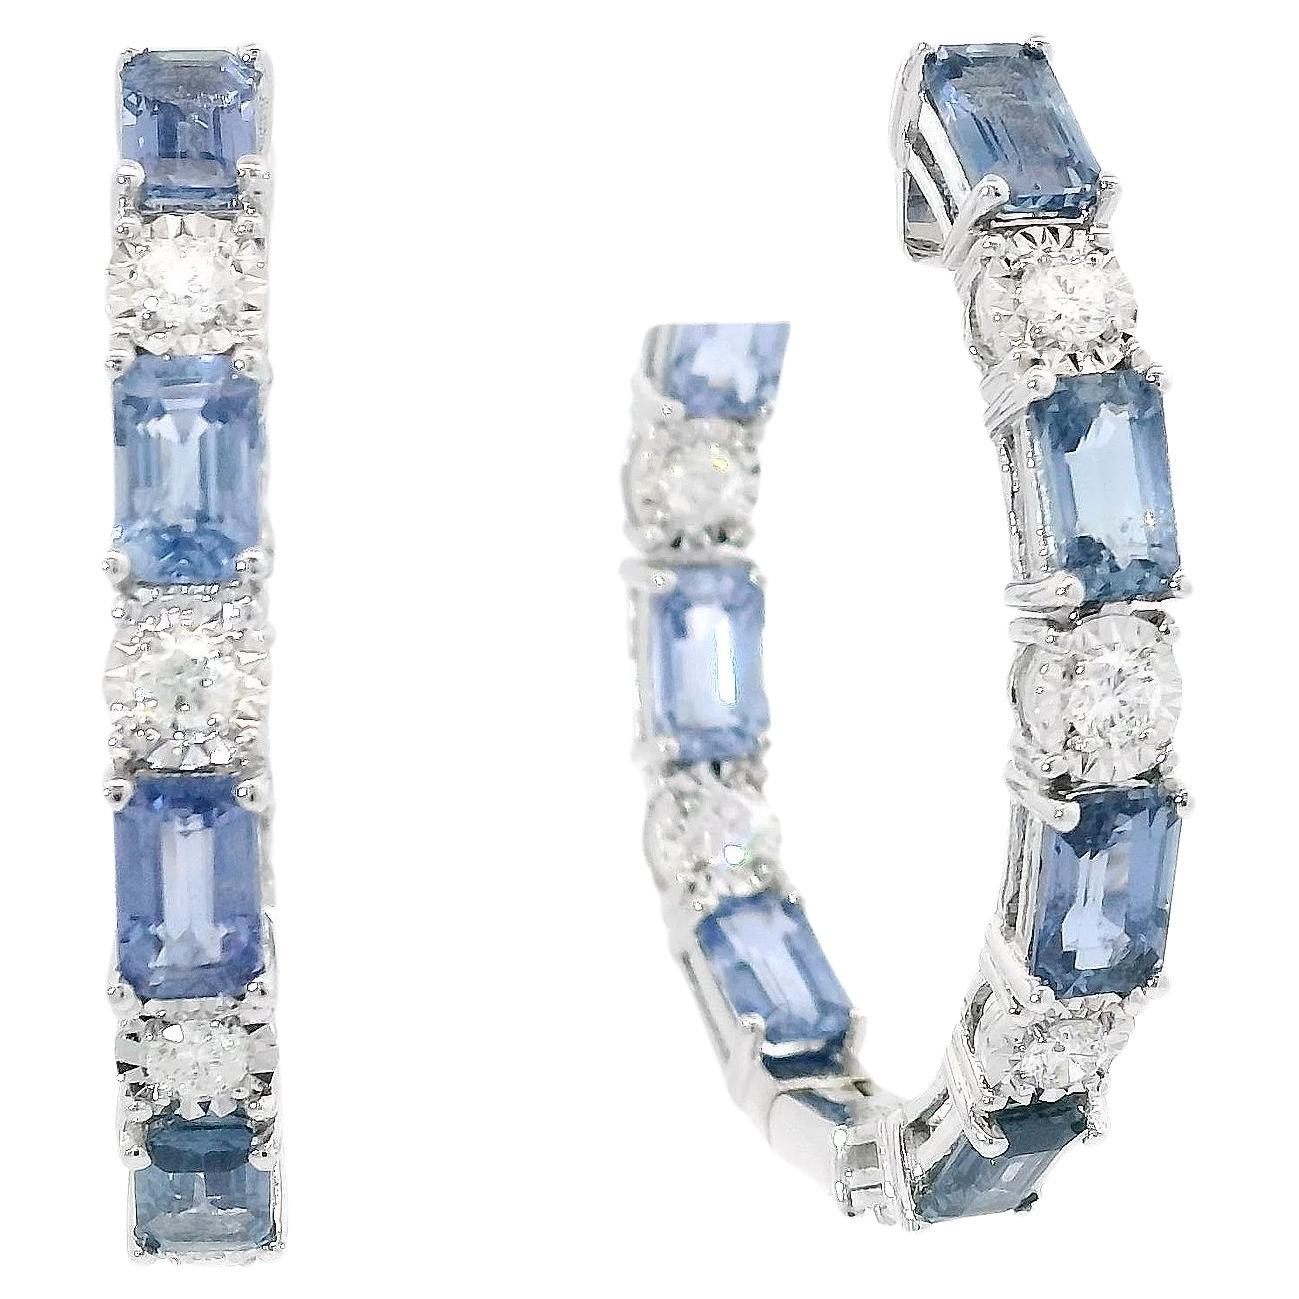 Entdecken Sie die Anziehungskraft der Raffinesse mit diesen atemberaubenden Saphir- und Diamant-Ohrringen. Jedes Stück ist sorgfältig gefertigt und zeigt eine atemberaubende Abfolge von hellblauen Saphiren, die sich mit funkelnden Diamanten